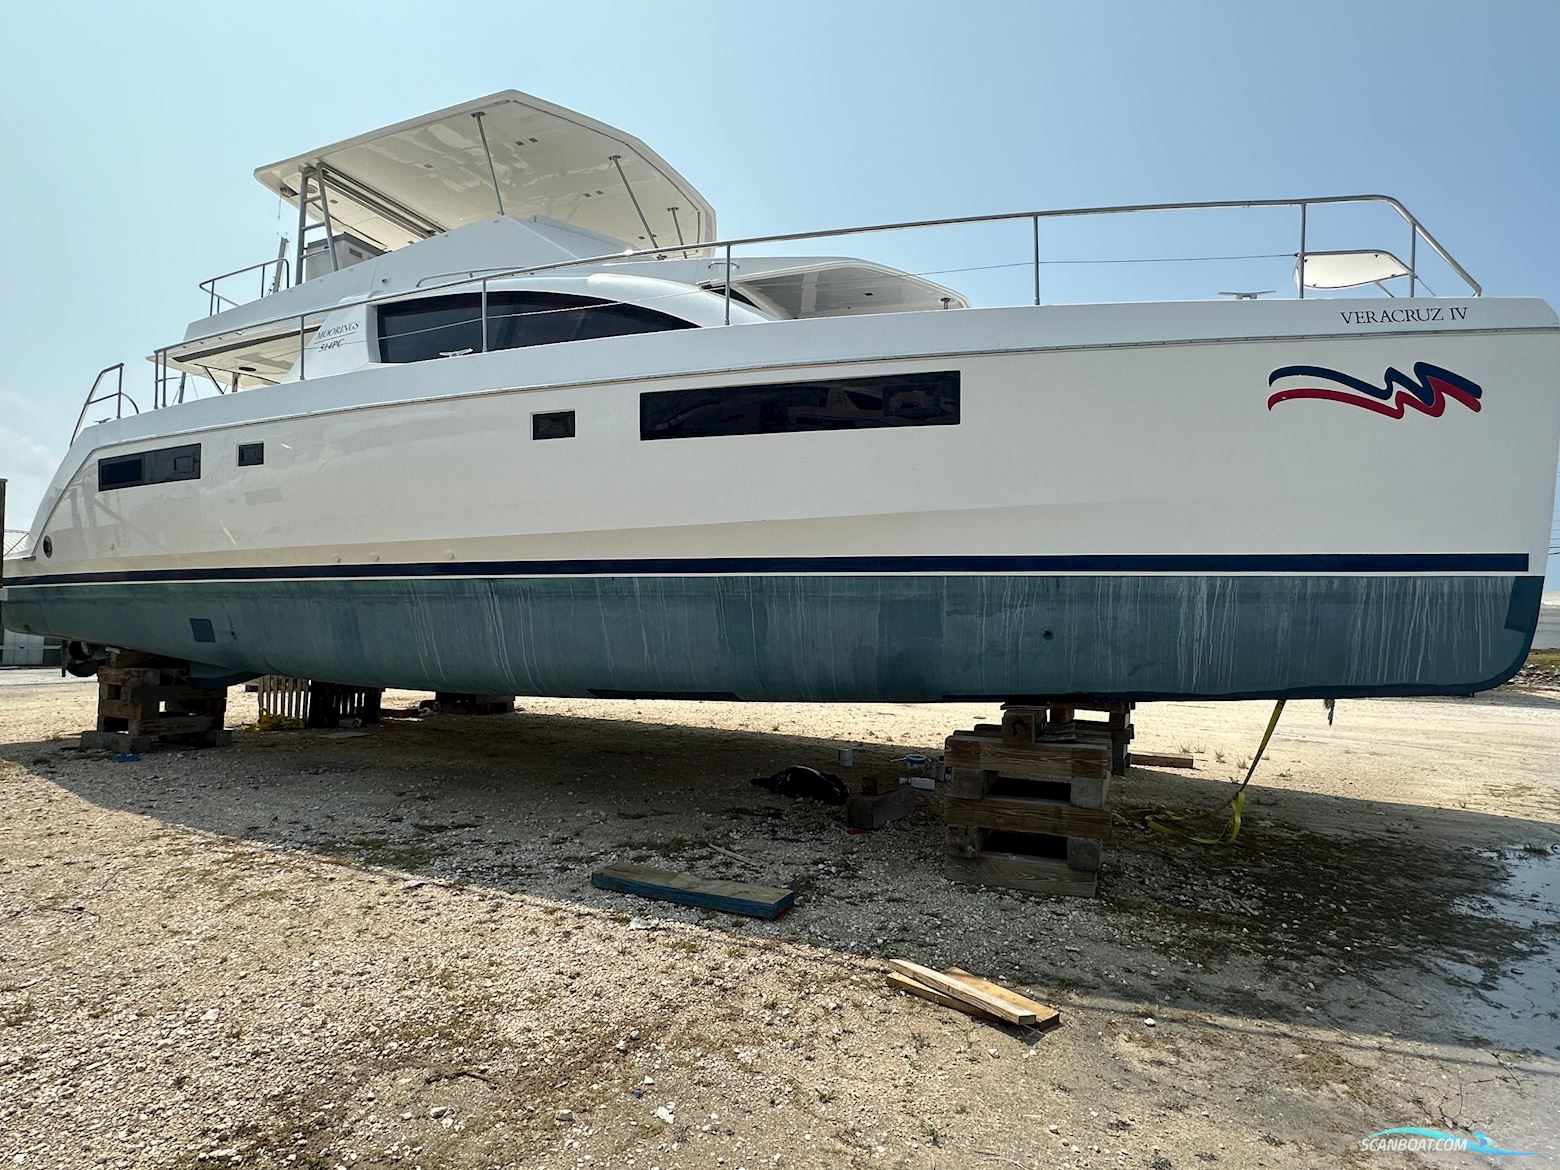 LEOPARD 51 Powercat Motorbåd 2018, med Yanmar motor, Virgin Islands